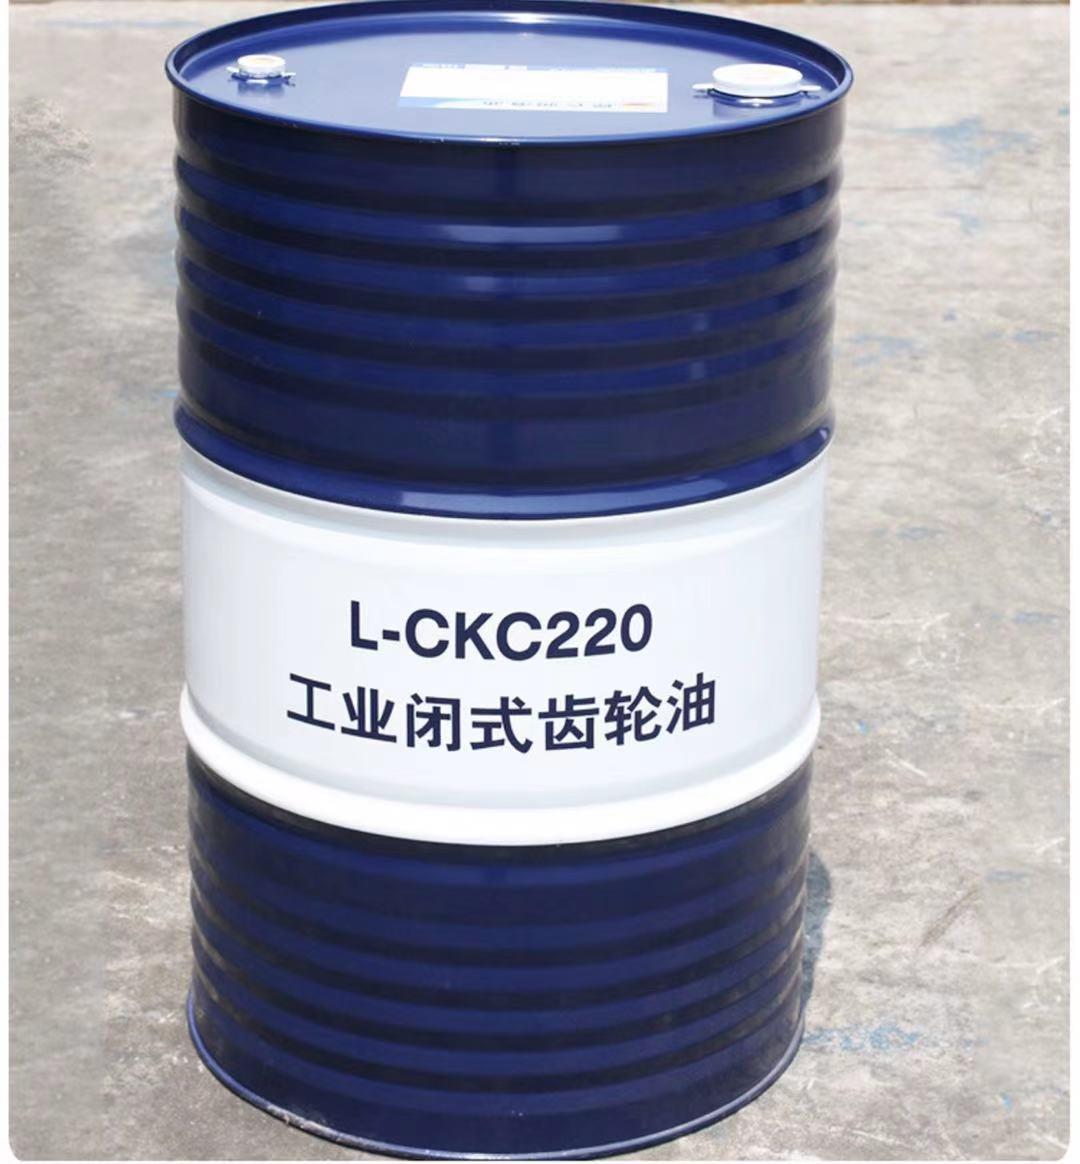 昆仑润滑油总代理 昆仑工业齿轮油CKC220 170kg 厂家授权 质量保证